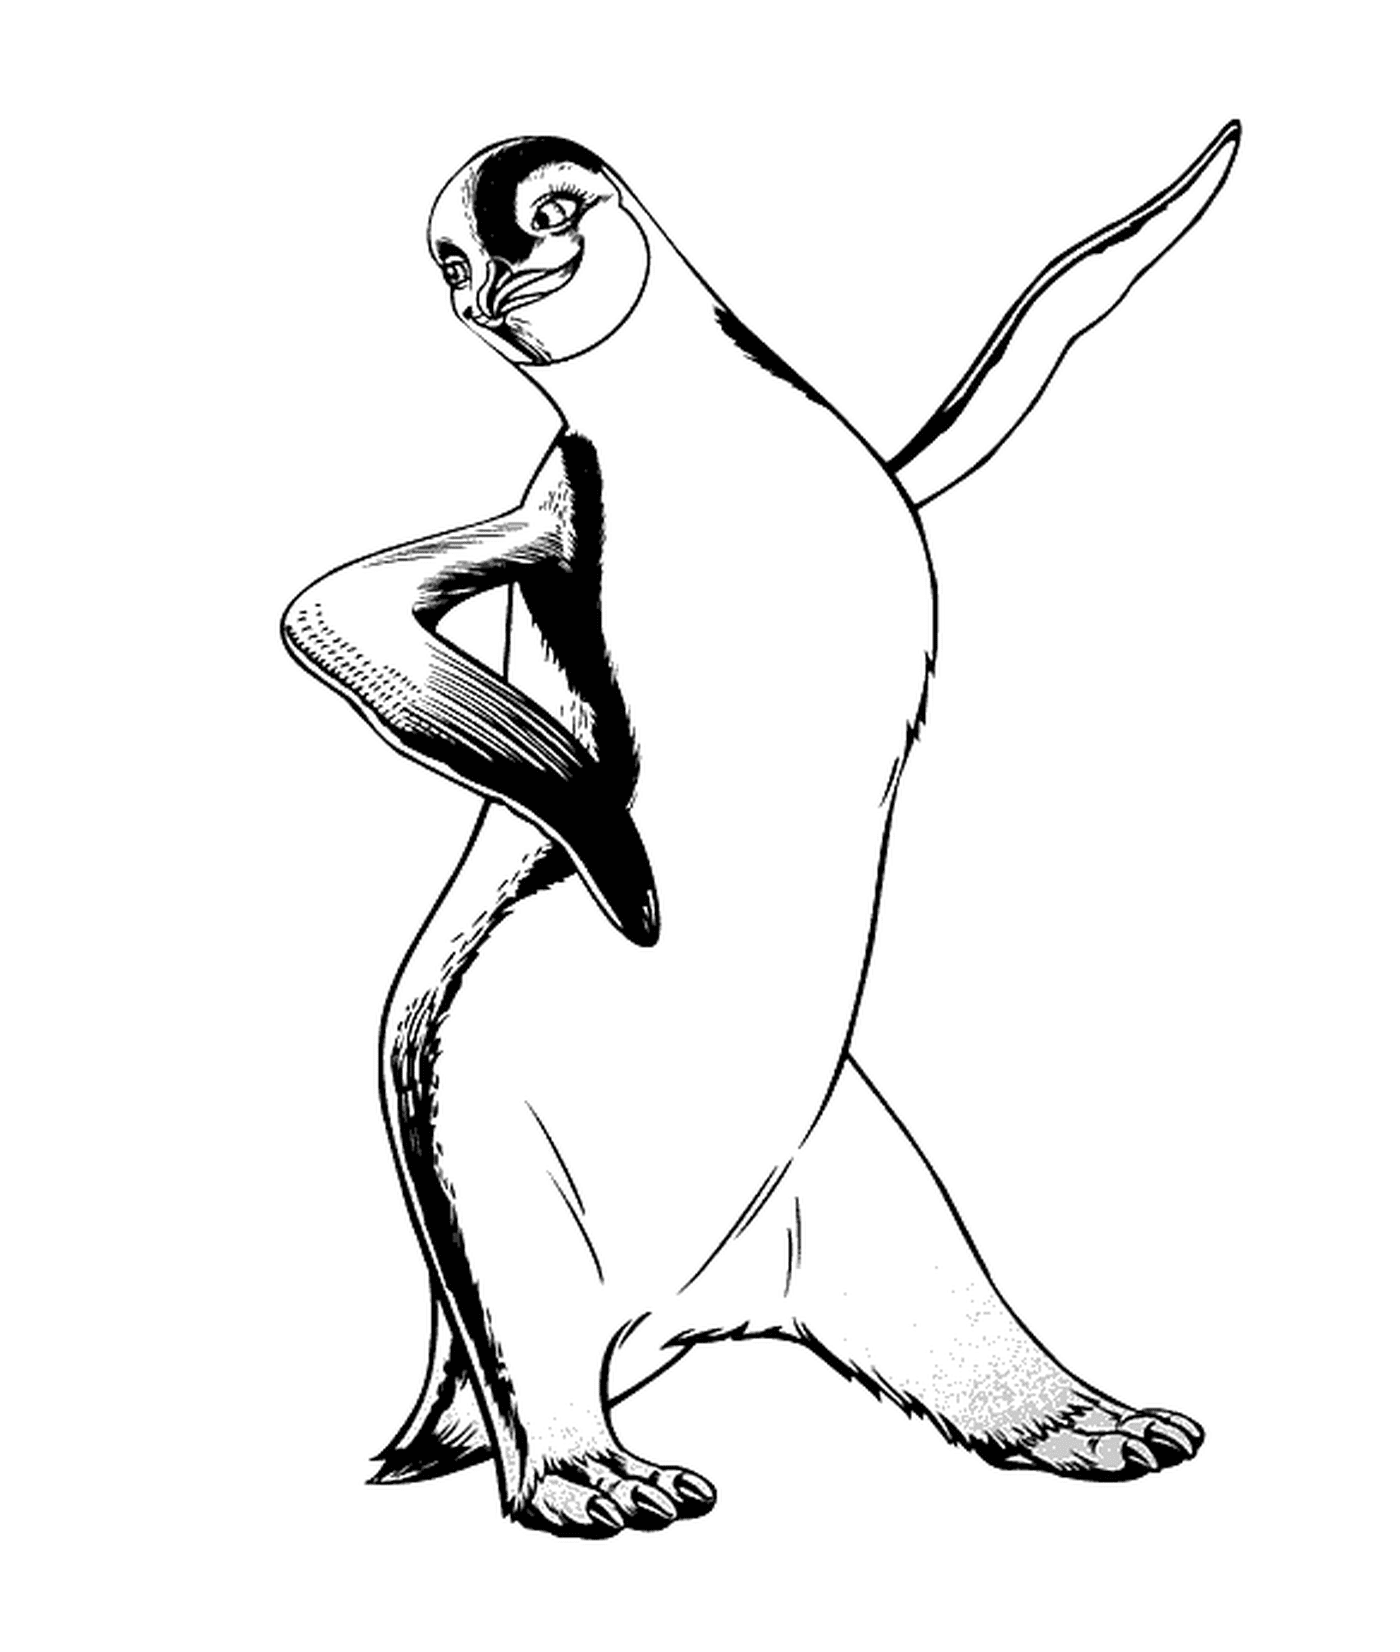   Pingouin dansant avec enthousiasme 